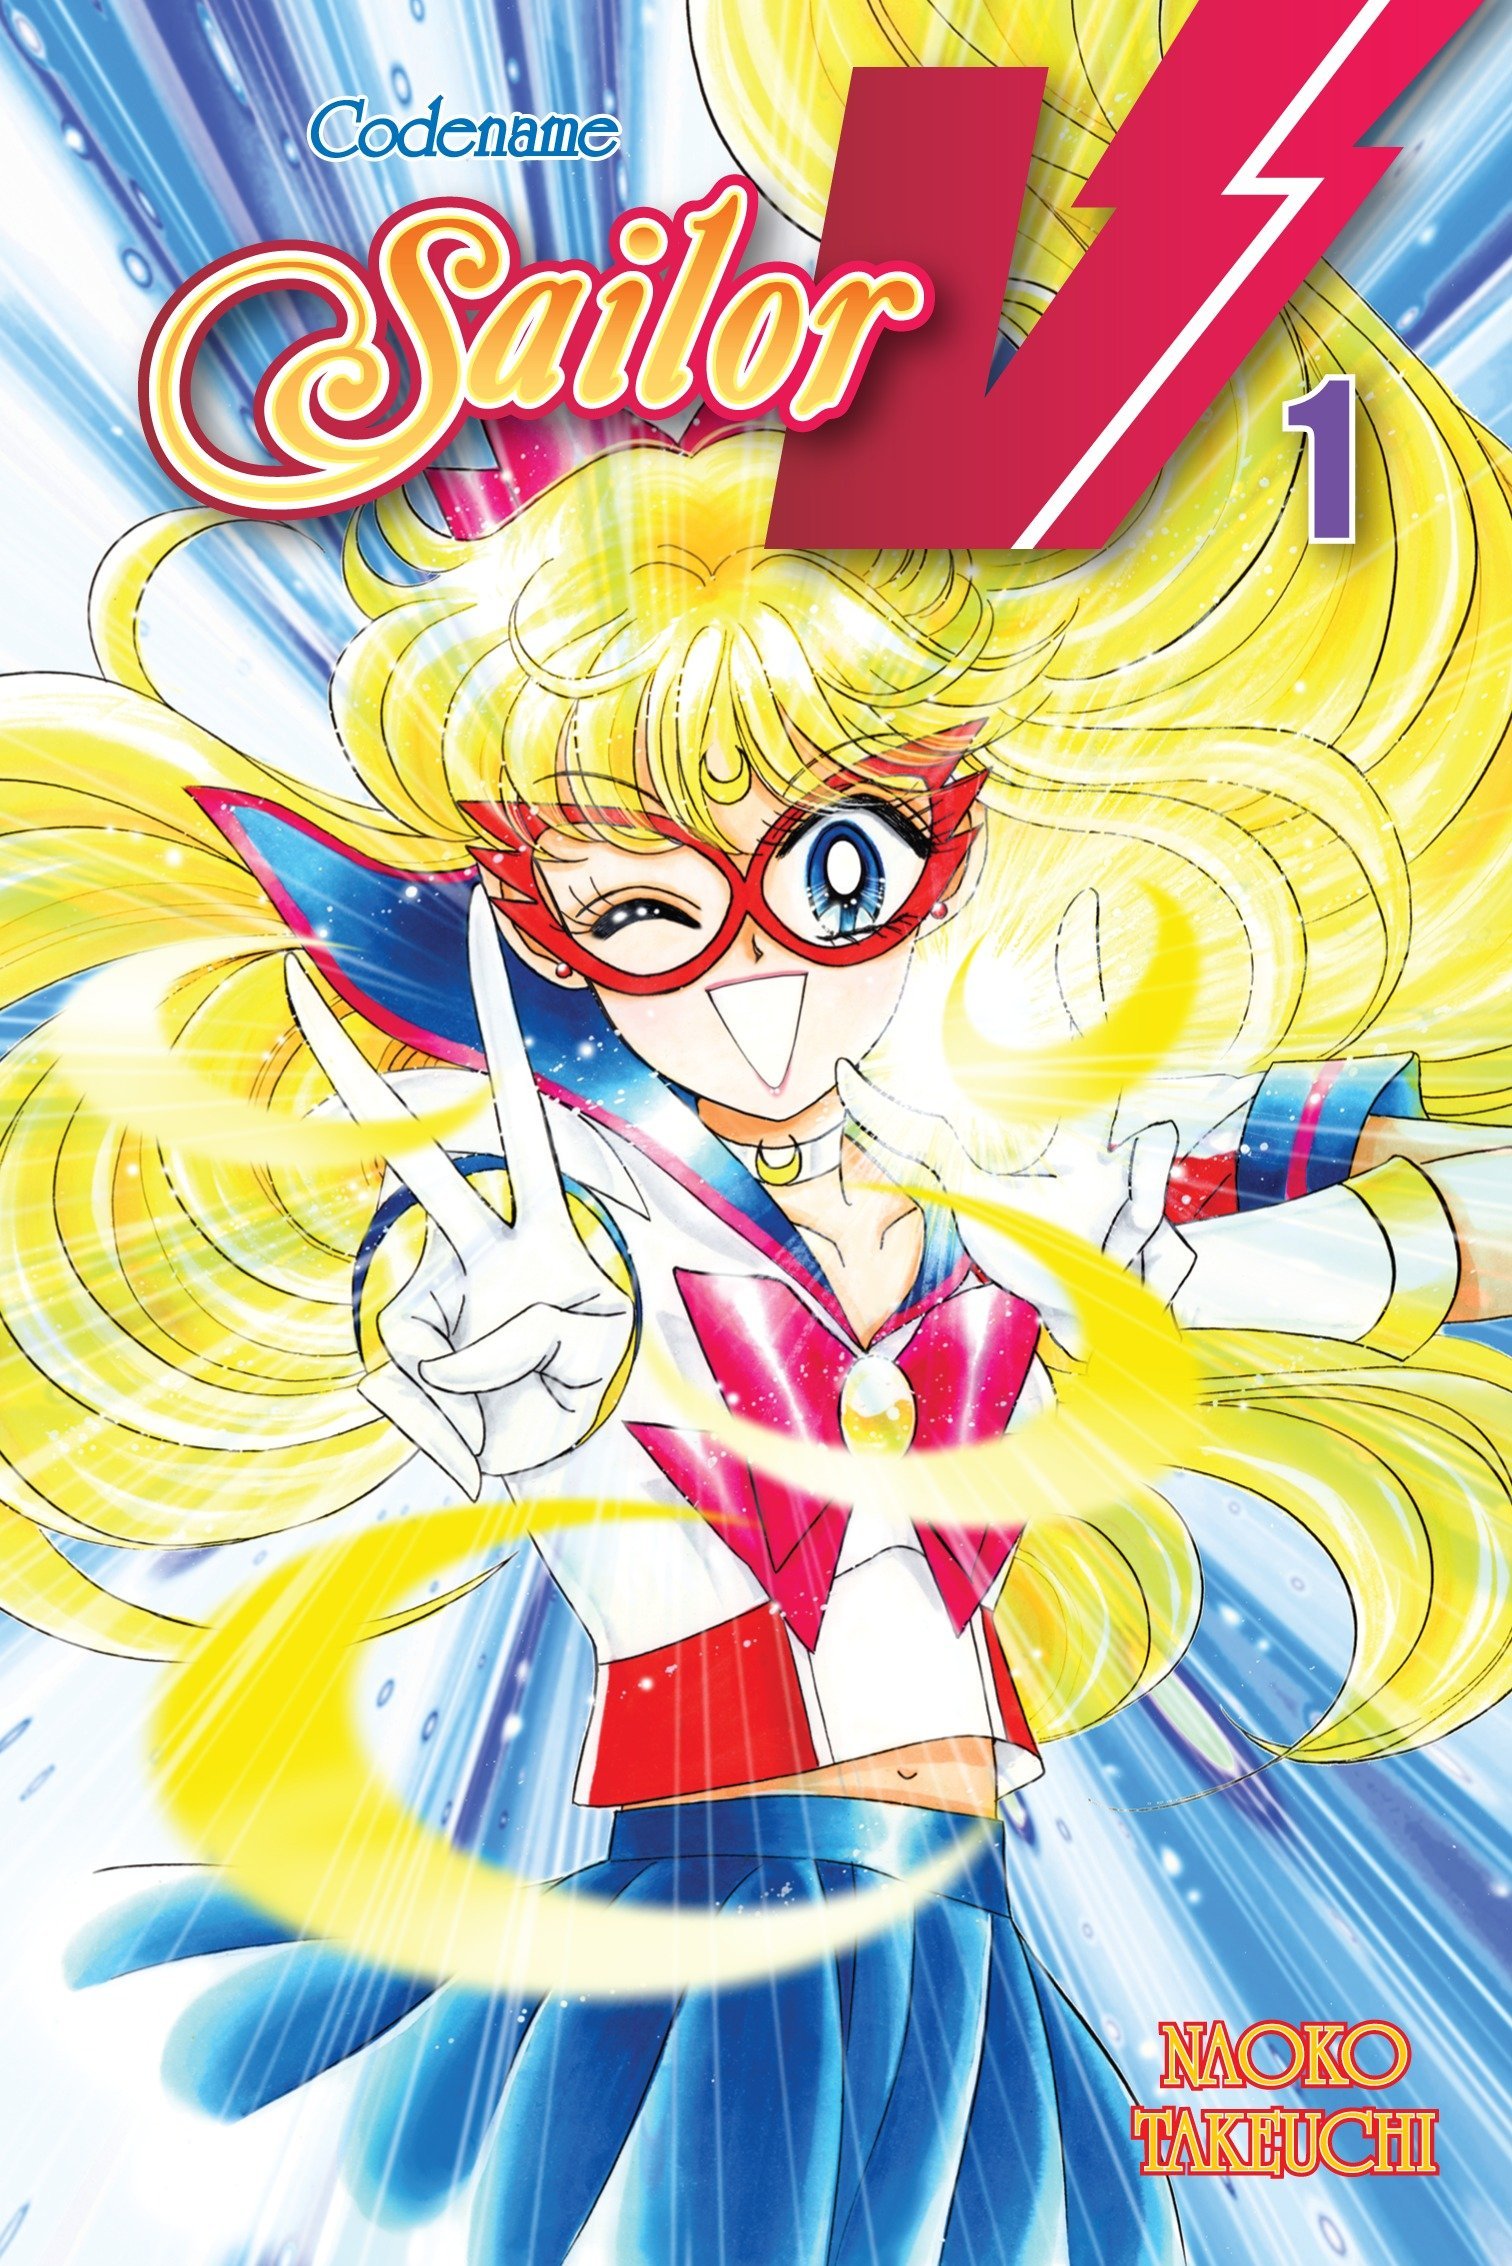 Codename: Sailor - Volume 1 | Naoko Takeuchi